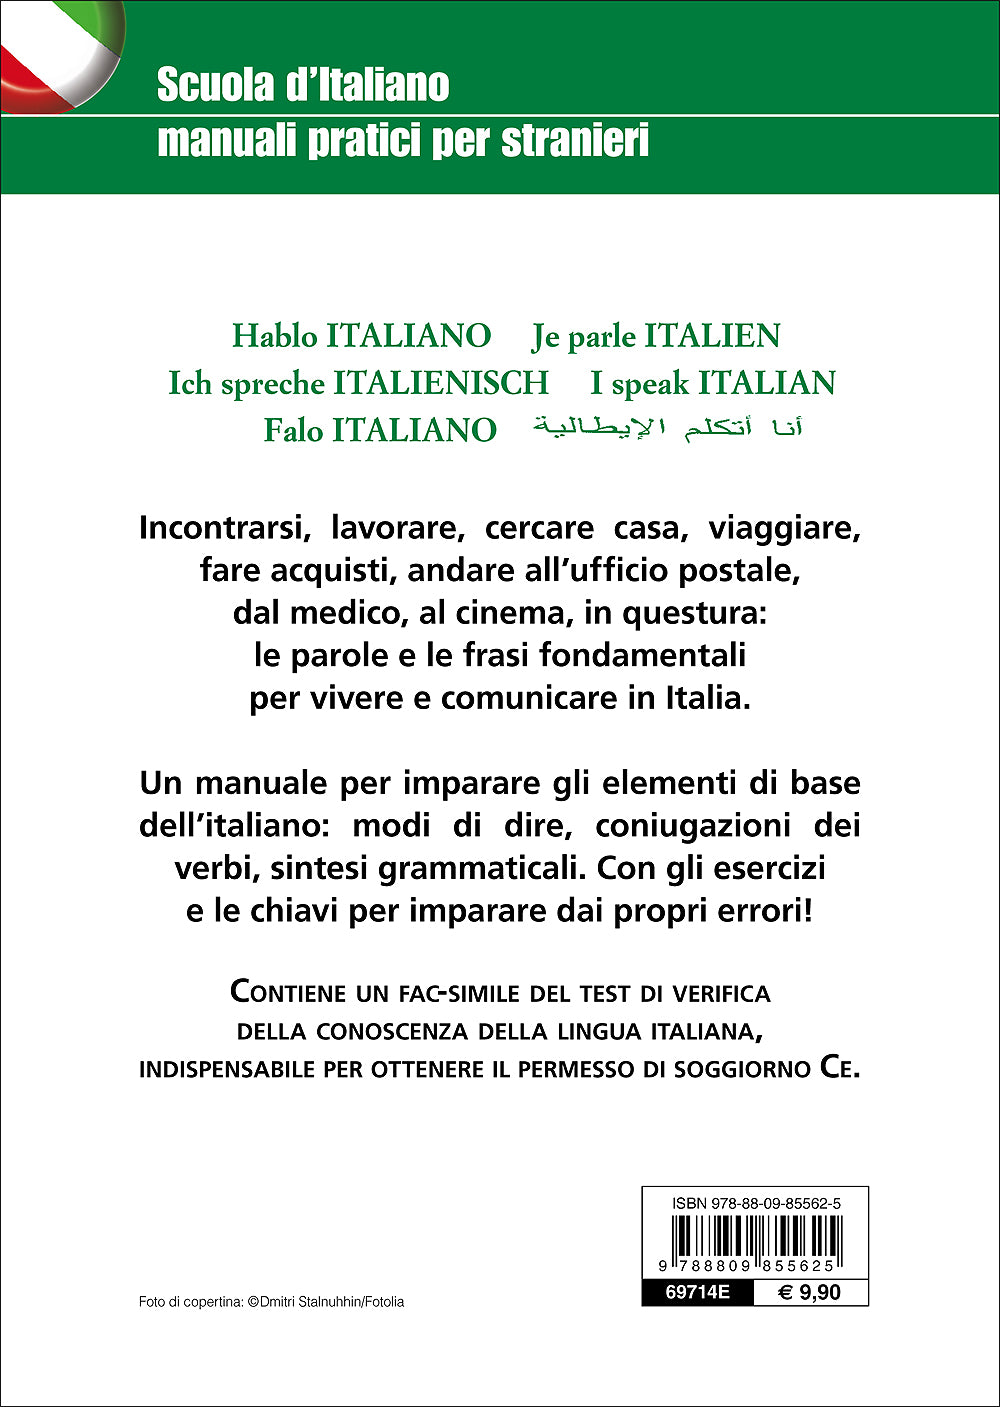 Parlo italiano::Manuale per l'apprendimento dell'italiano di base - Con test di lingua per il permesso di soggiorno